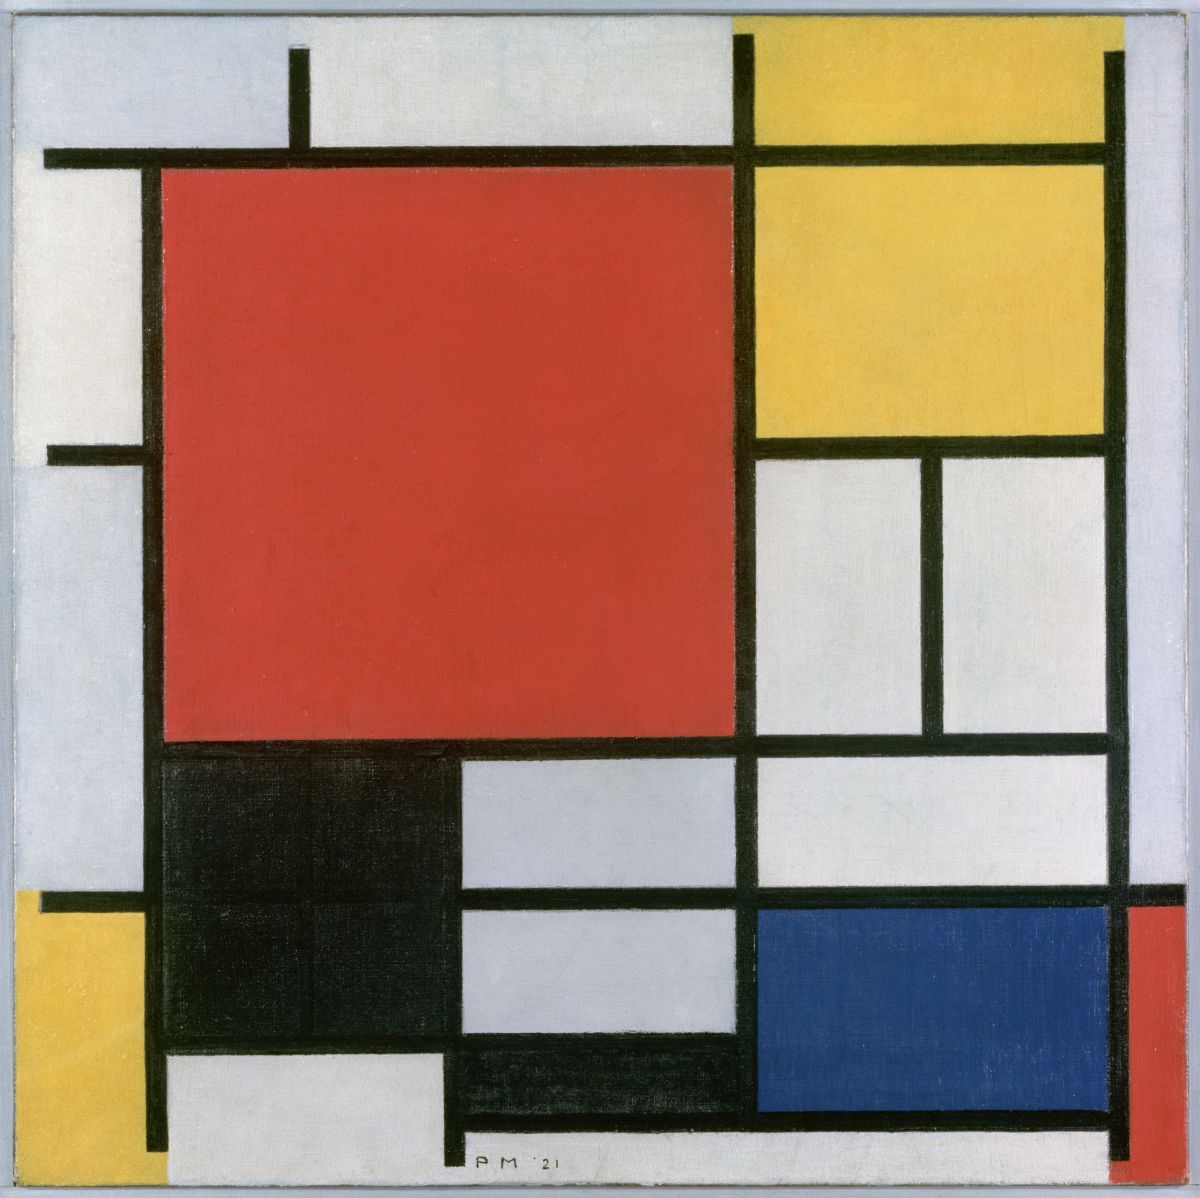 Piet Mondrian, Kompozycja w czerwieni, żółci, błękicie i czerni, malarstwo abstrakcyjne, de Stijl, neoplastycyzm, Niezła Sztuka